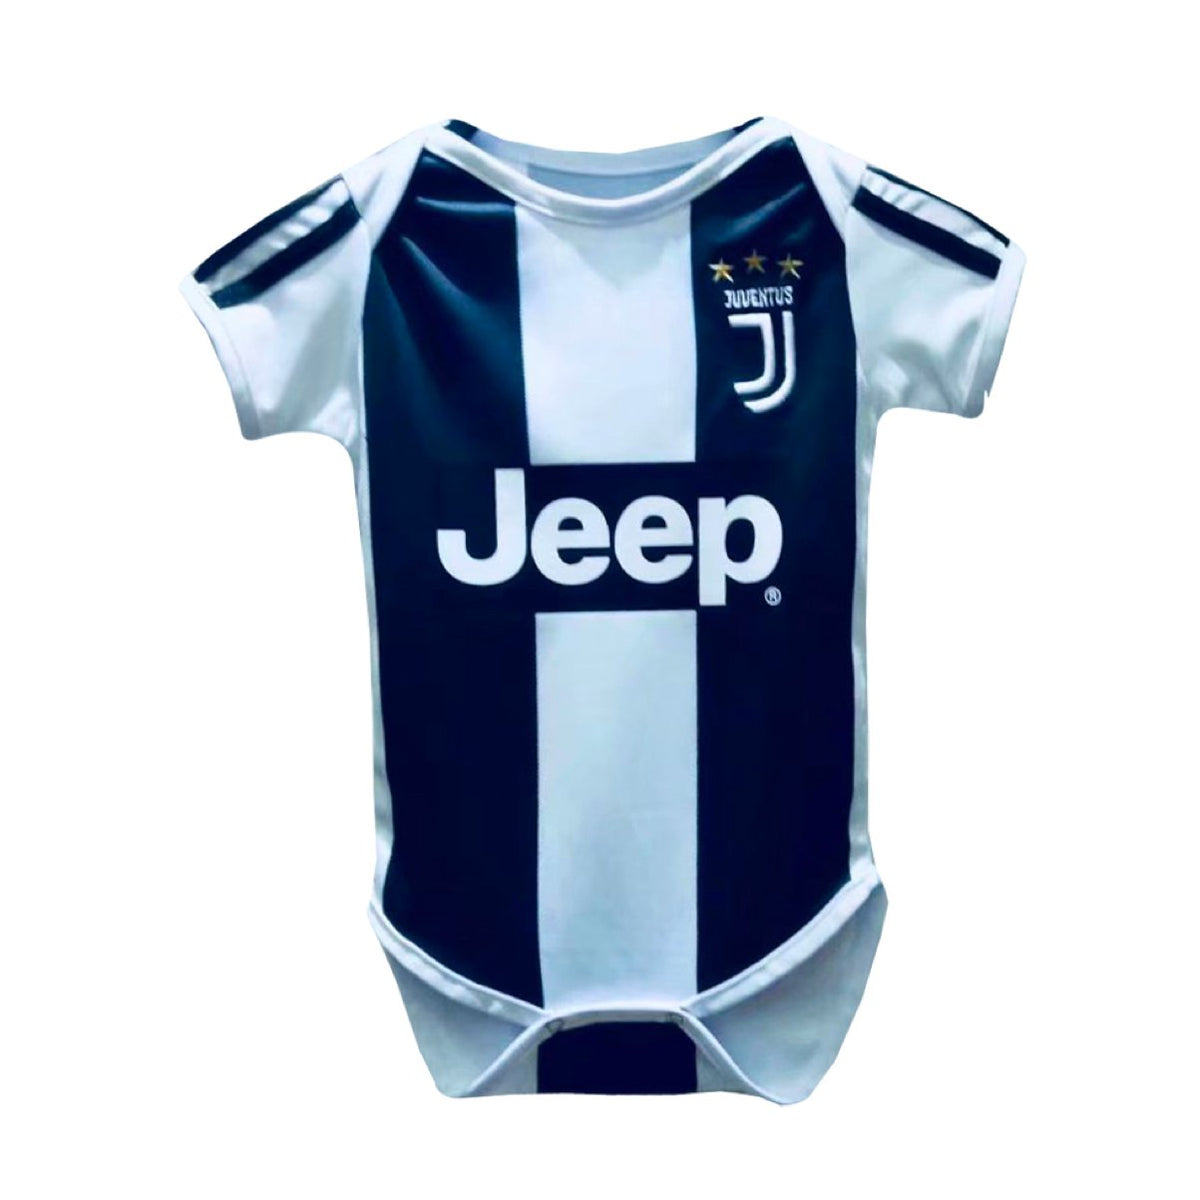 Juventus baby jersey